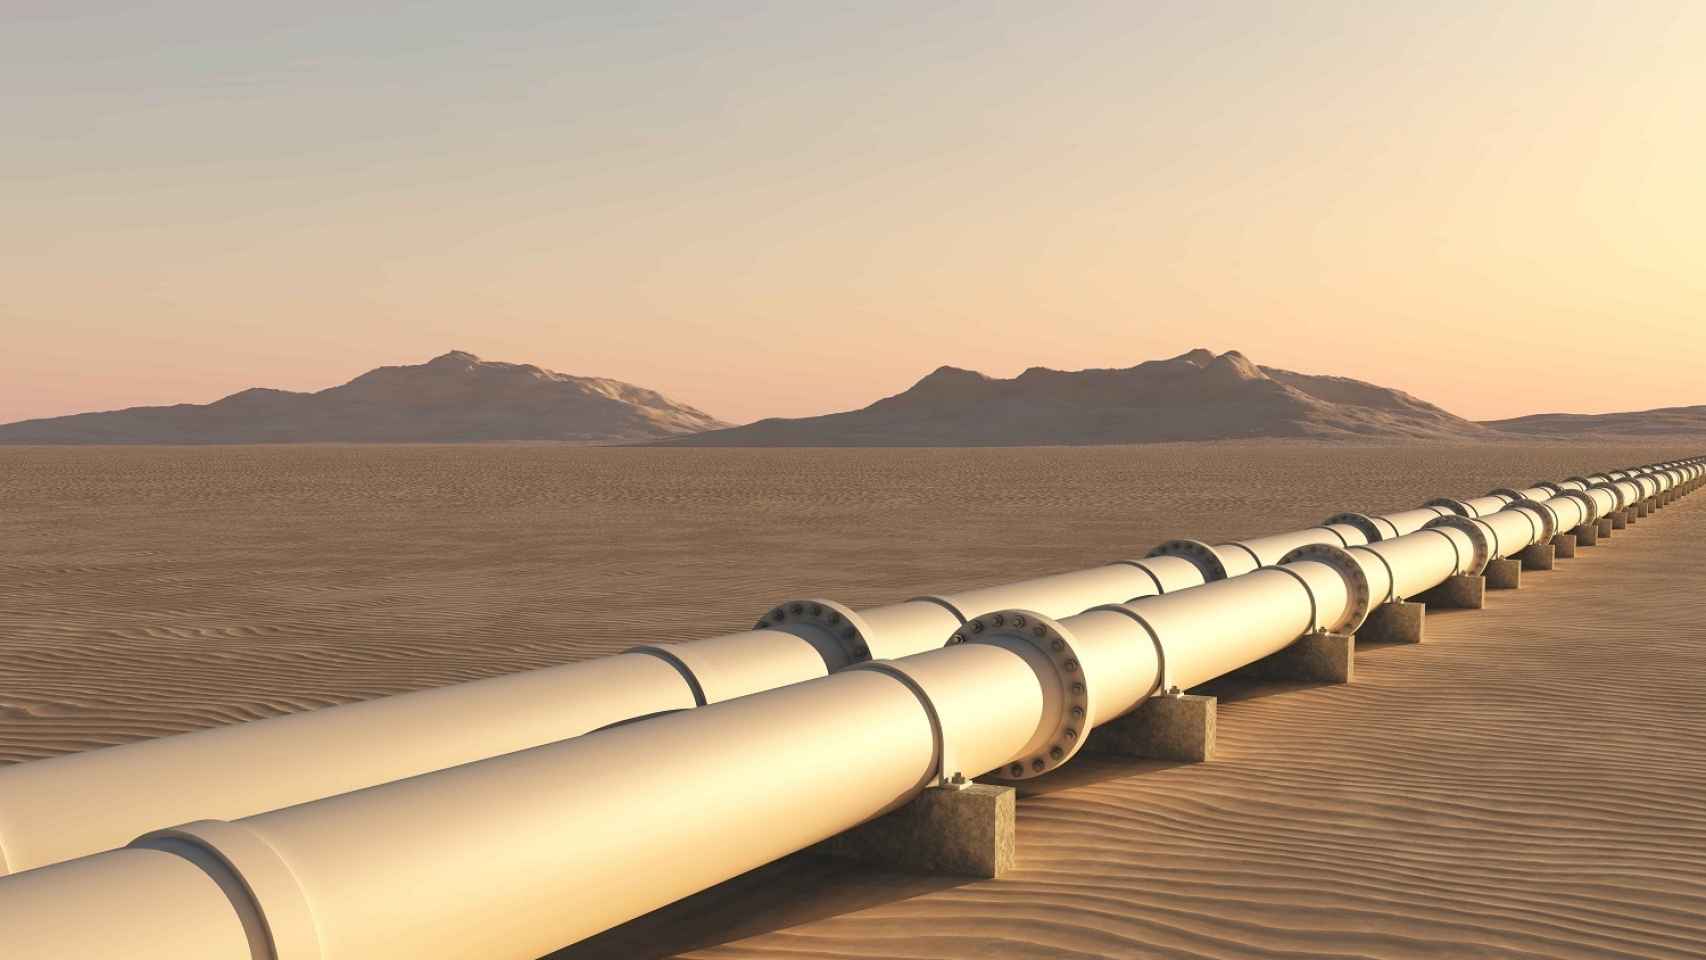 Gasoductos atravesando el desierto.